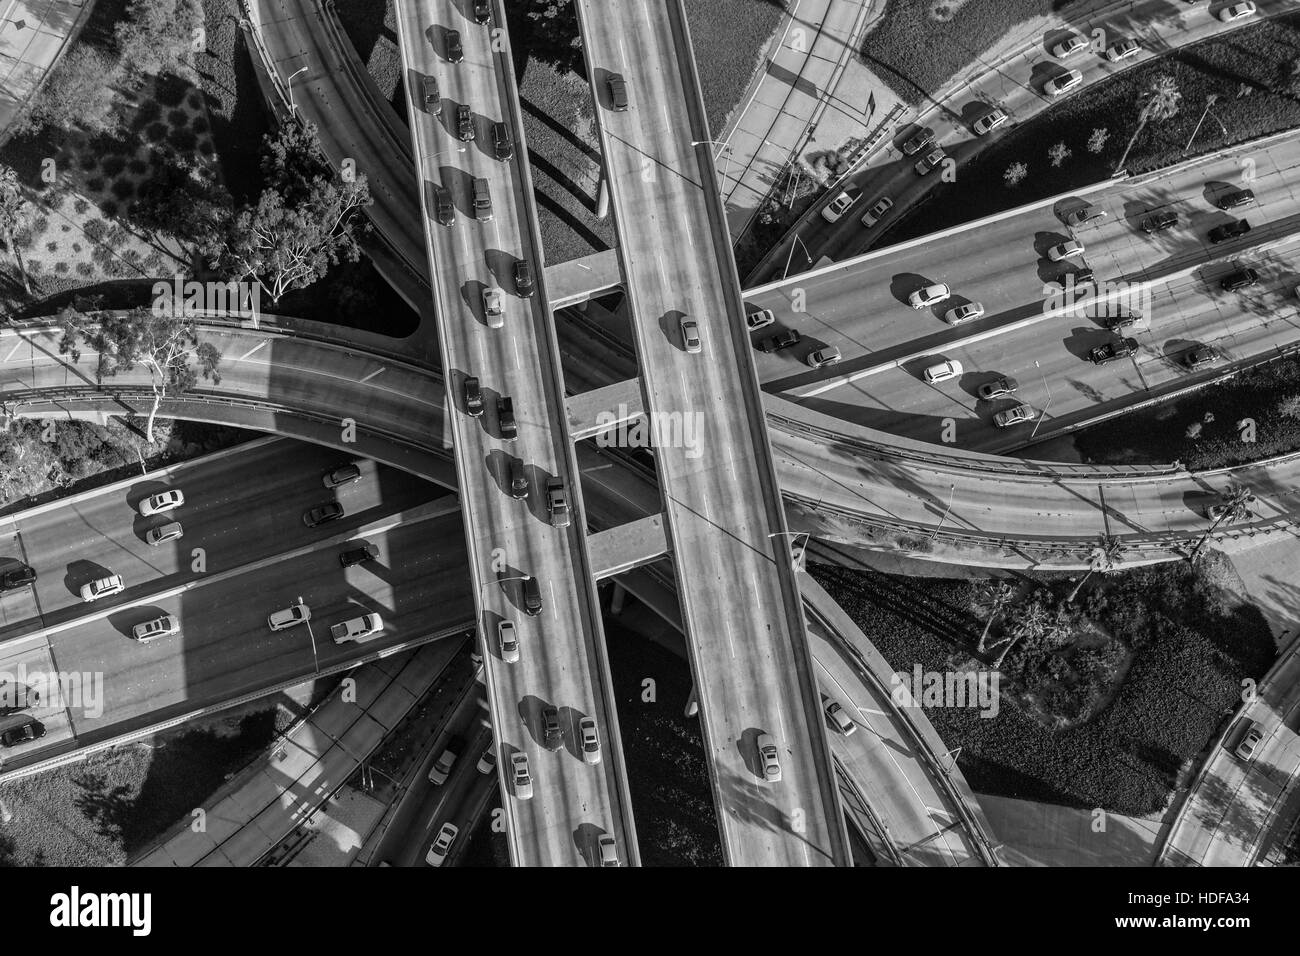 Le noir et blanc vue aérienne centre-ville quatre échanges de niveau du port, Pasadena et Hollywood Freeways. Banque D'Images